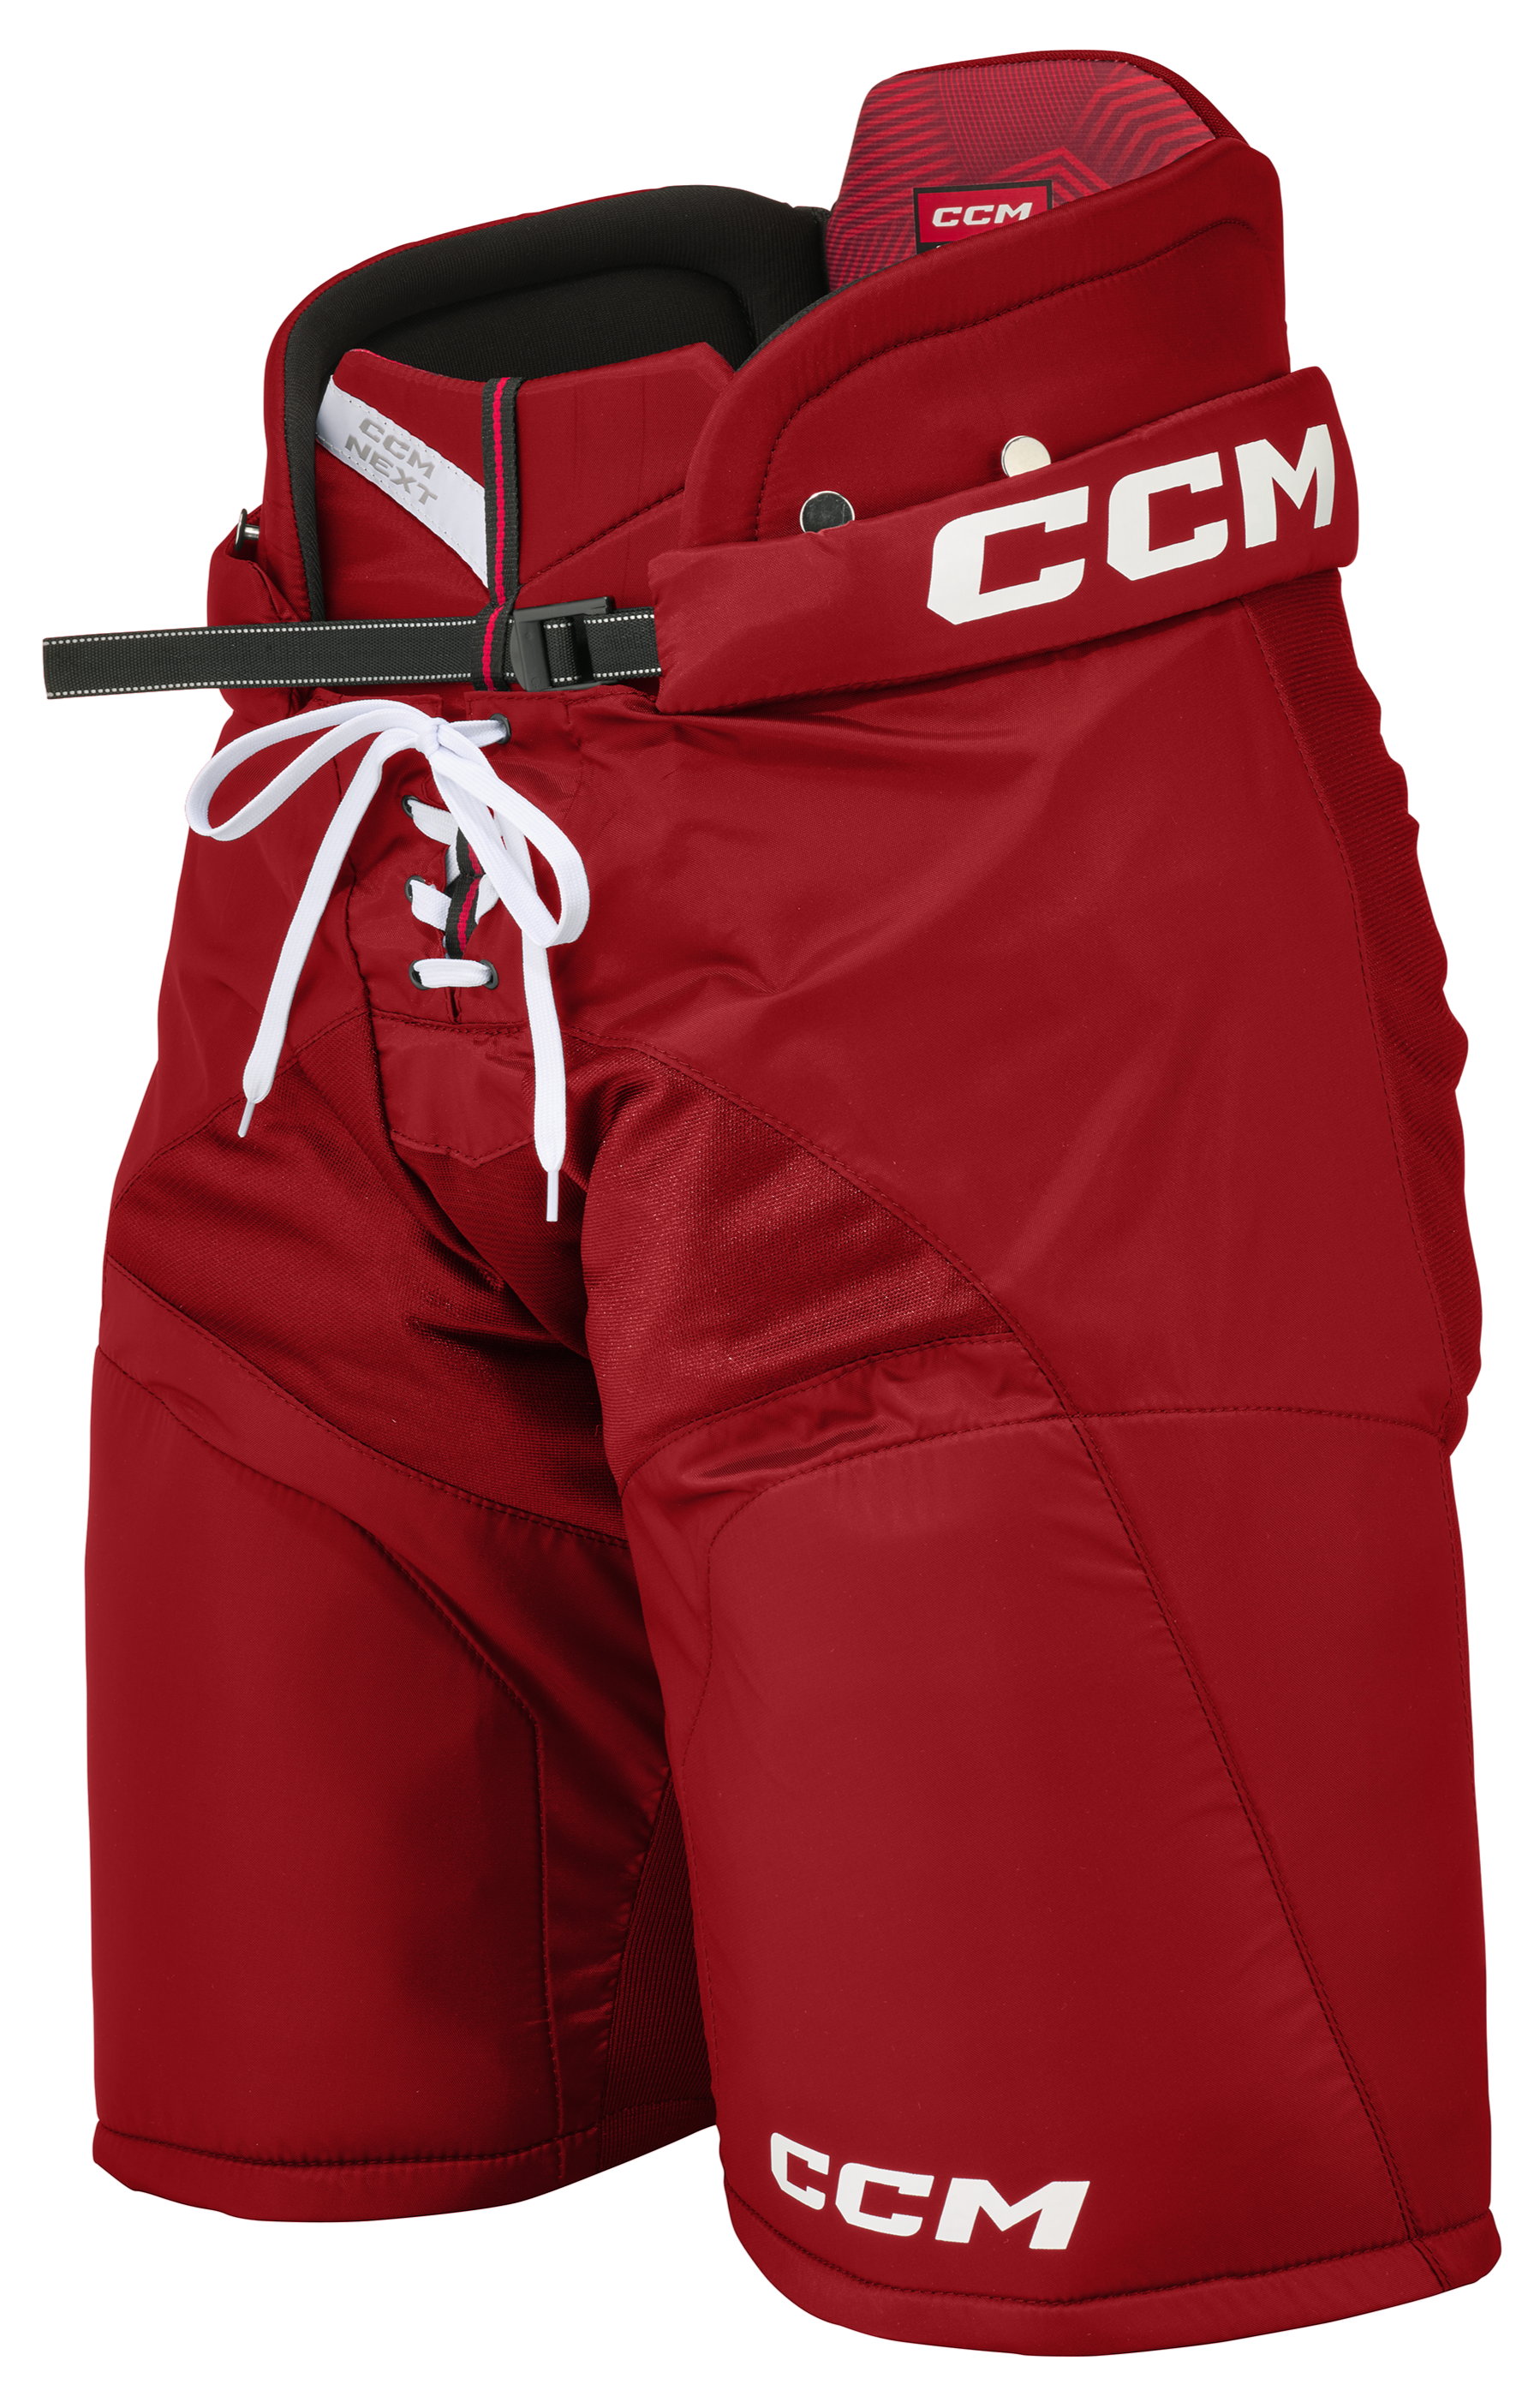 CCM Next Pantalons de Hockey Junior